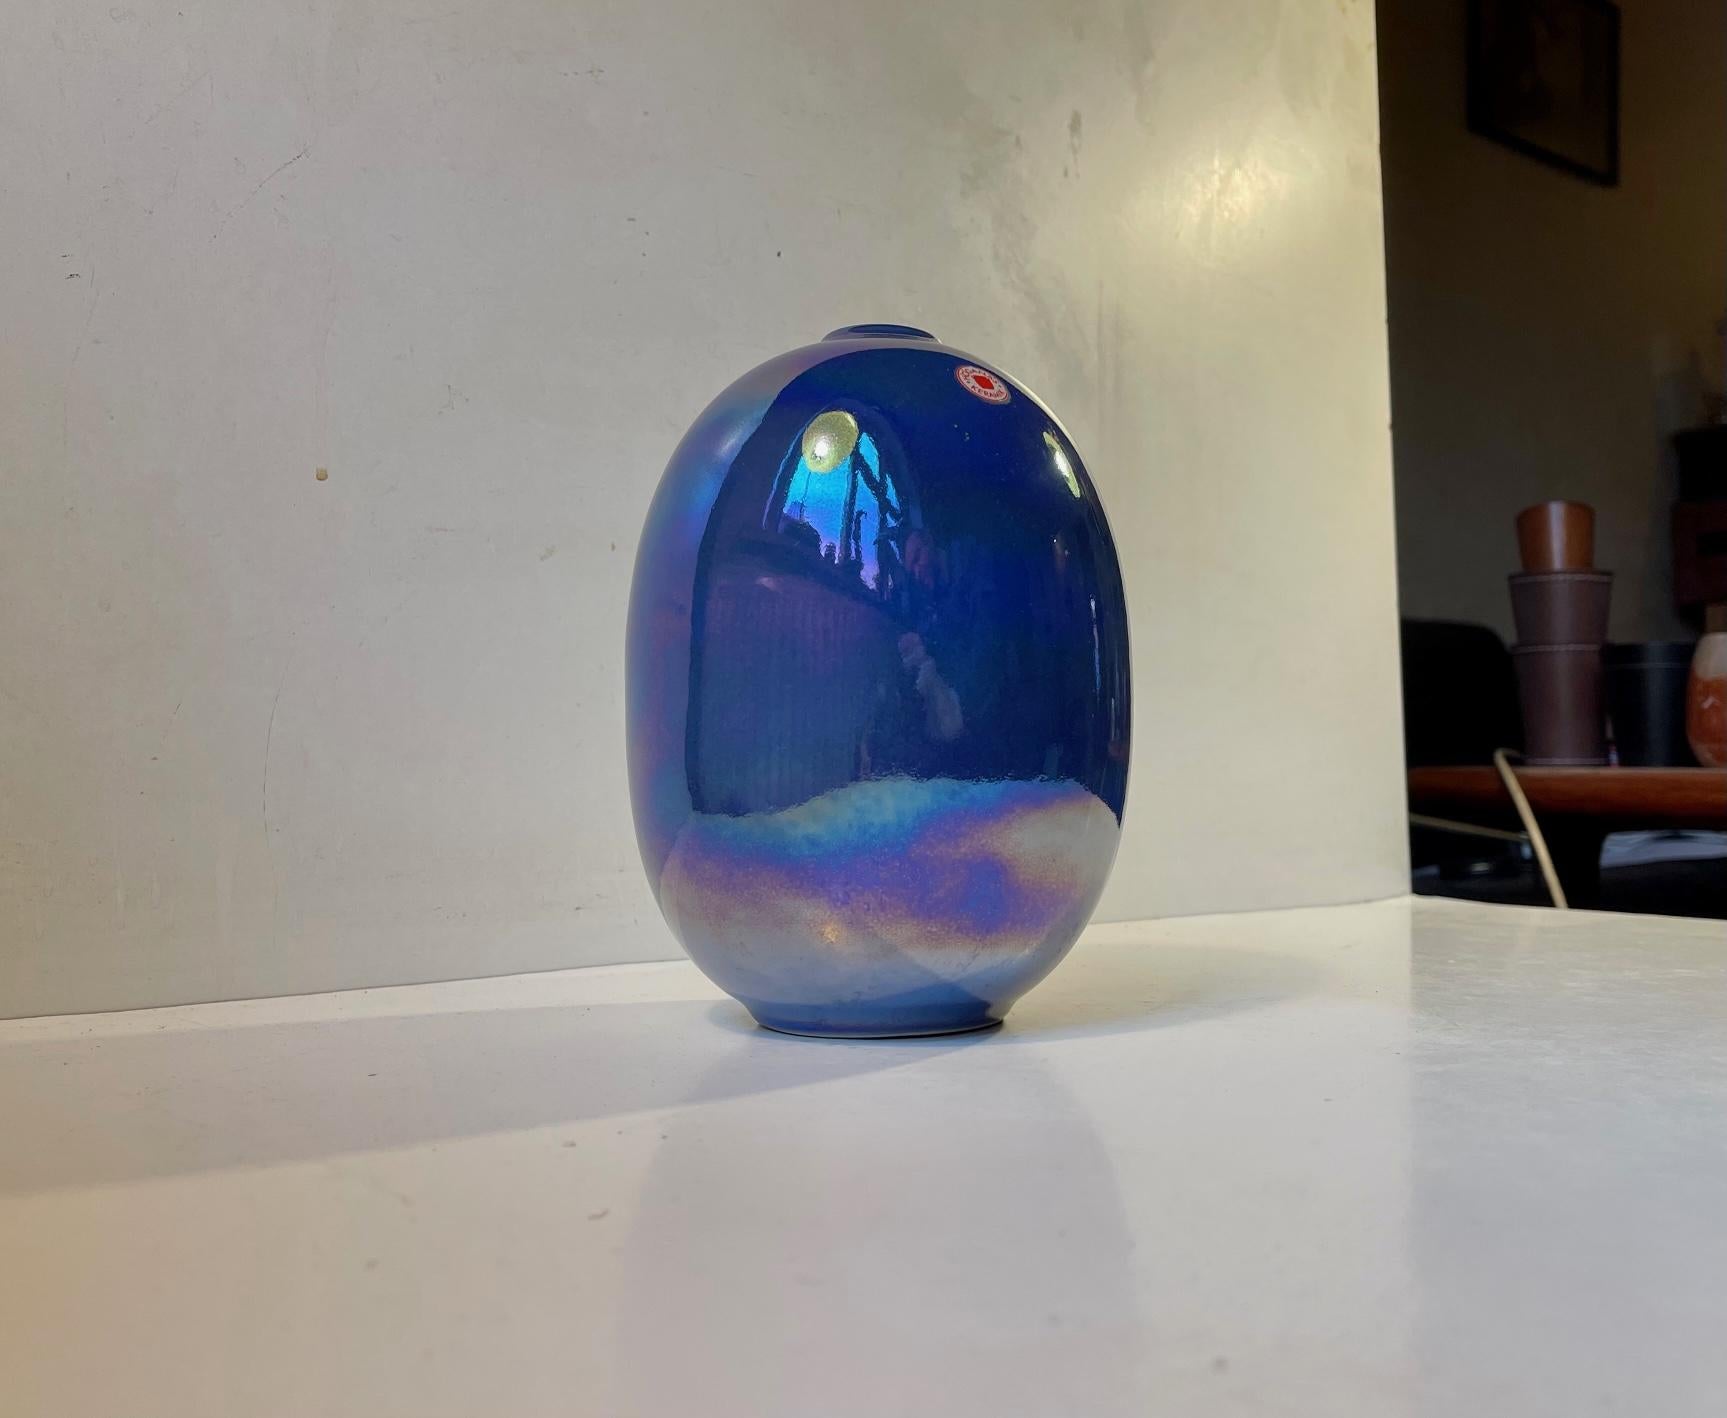 Vase émaillé miroir en forme d'œuf organique. La glaçure brillante change constamment de couleur en fonction de la lumière. Il a été fabriqué et conçu par Höganäs en Suède dans les années 1970. Il est estampillé par le fabricant sur la base. Mesures